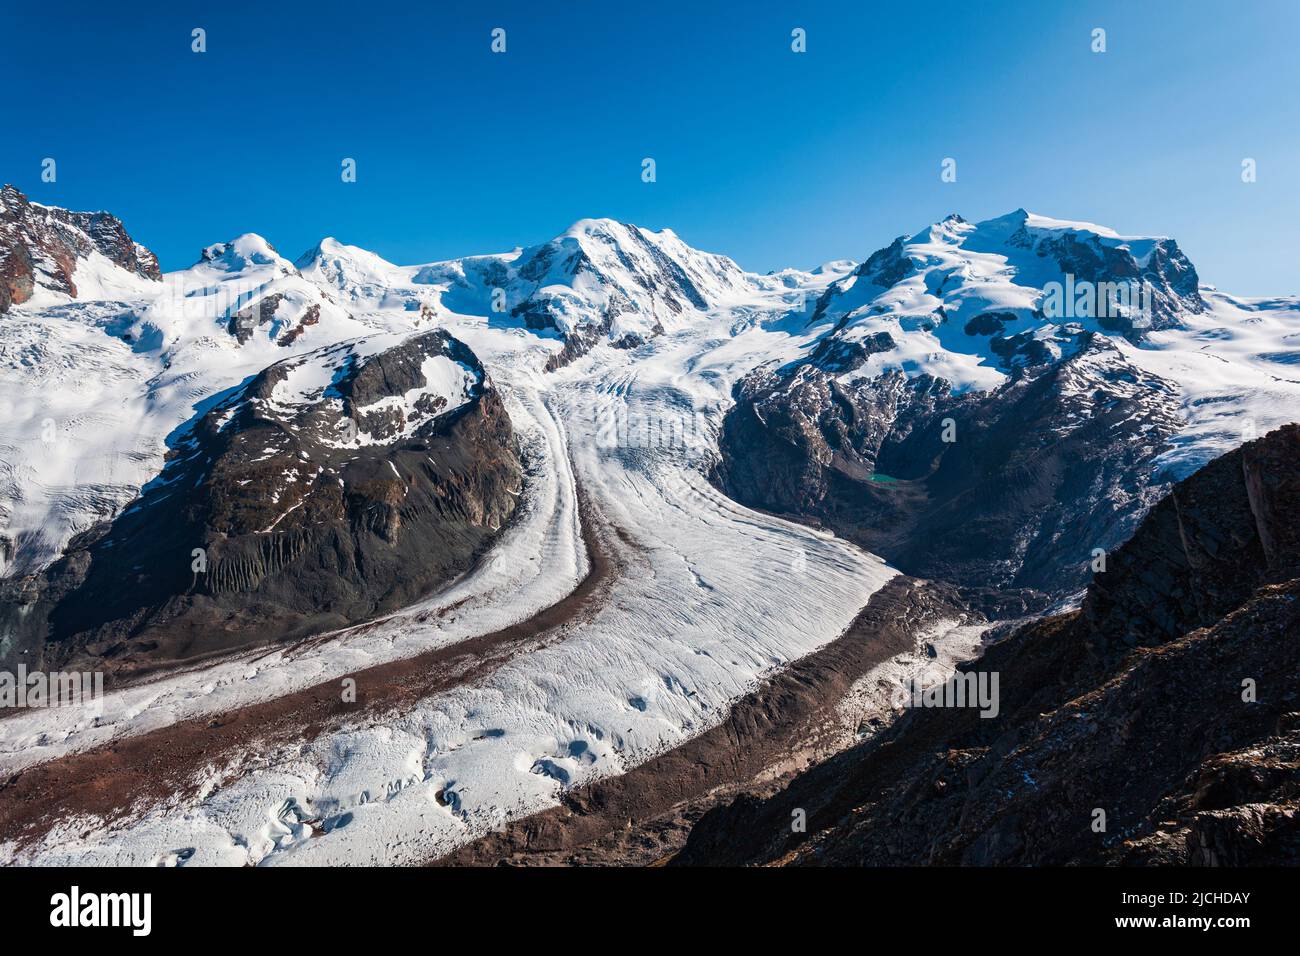 Monte Rosa macizo montañoso y Glaciar Gorner vista panorámica desde el mirador de Gornergrat cerca de la ciudad de Zermatt, Suiza Foto de stock